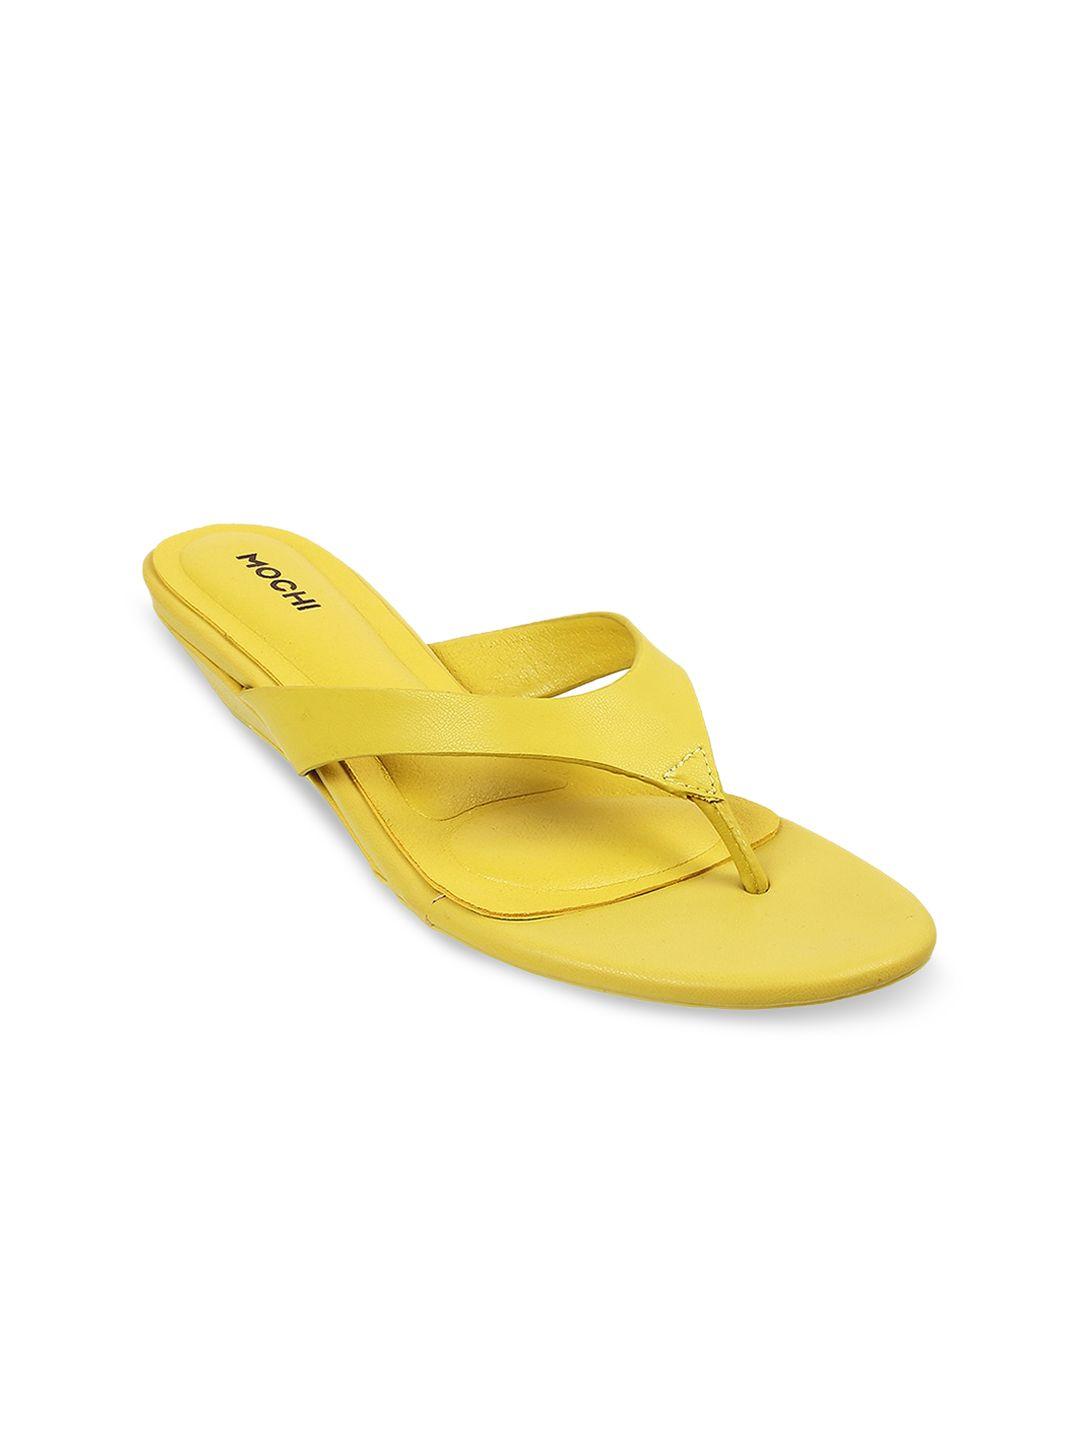 mochi-women-yellow-open-toe-flats